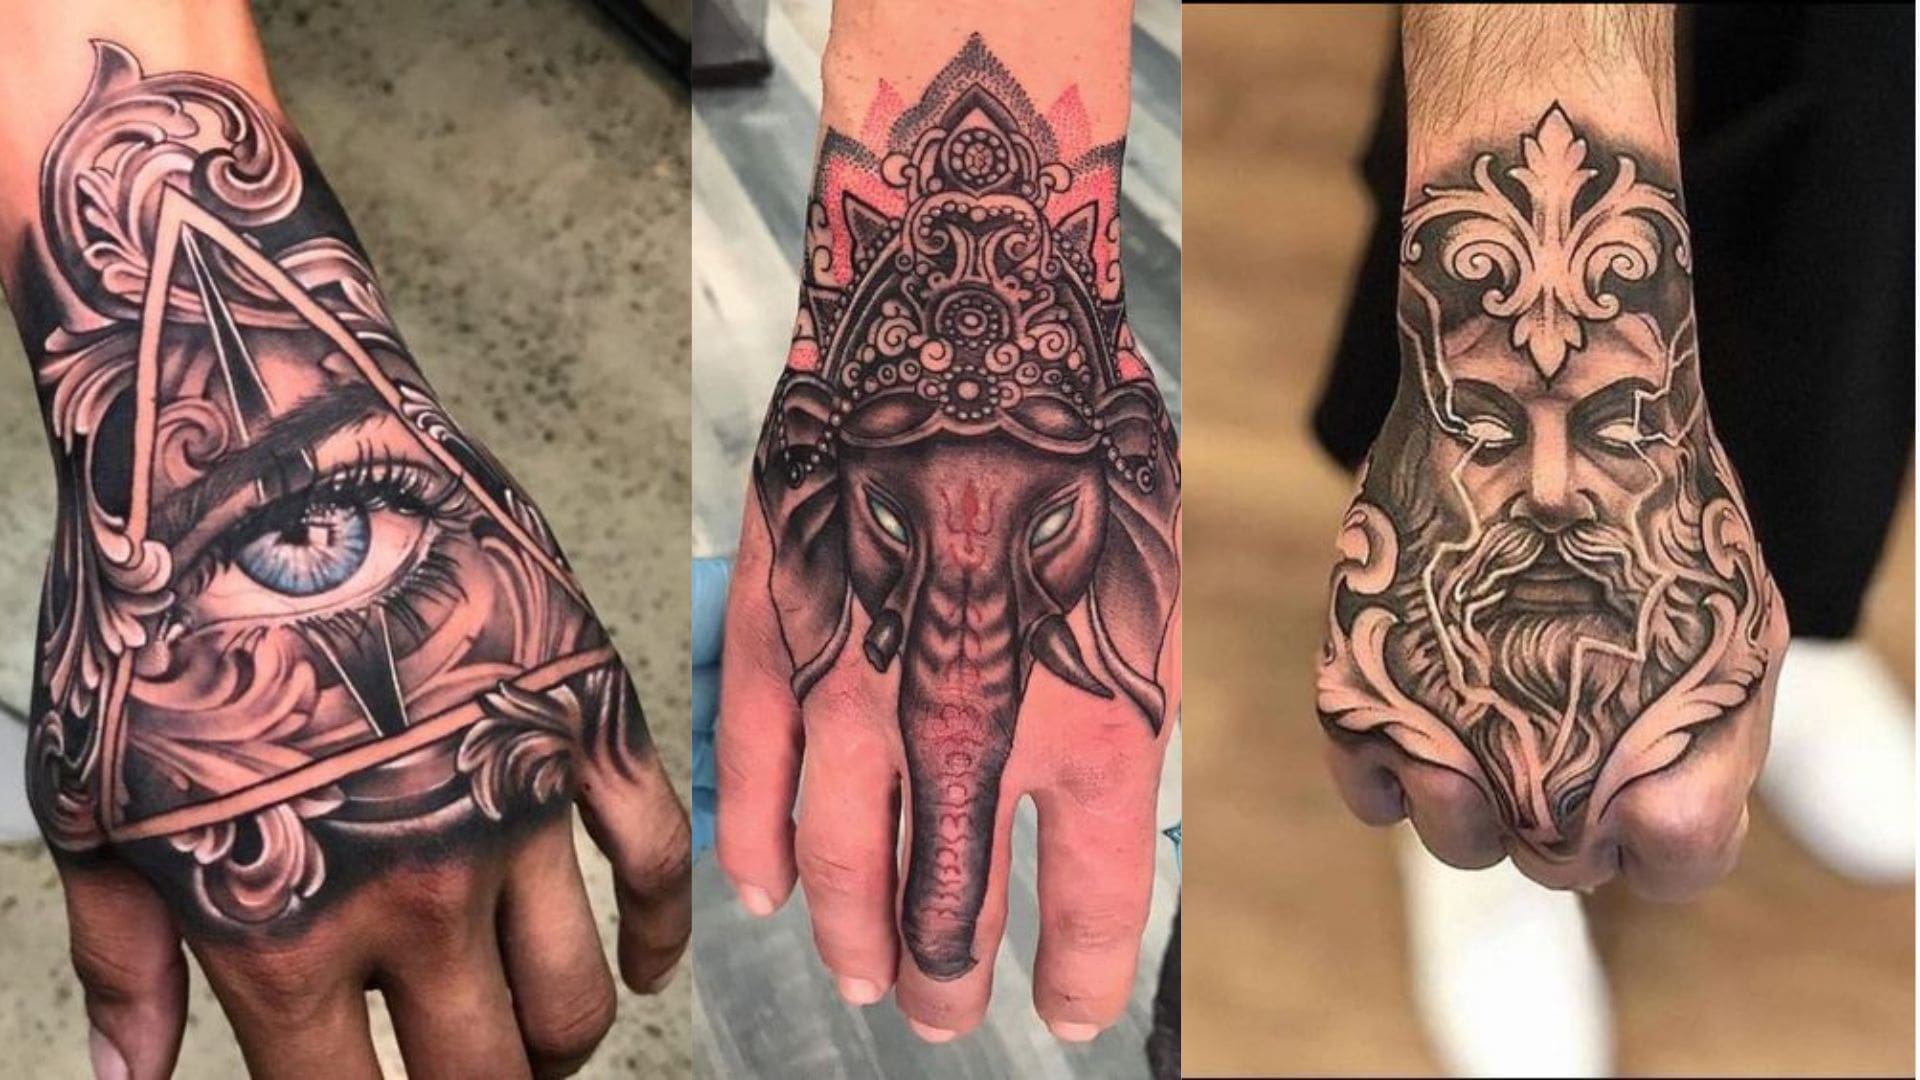 Hand Tattoo Ideas